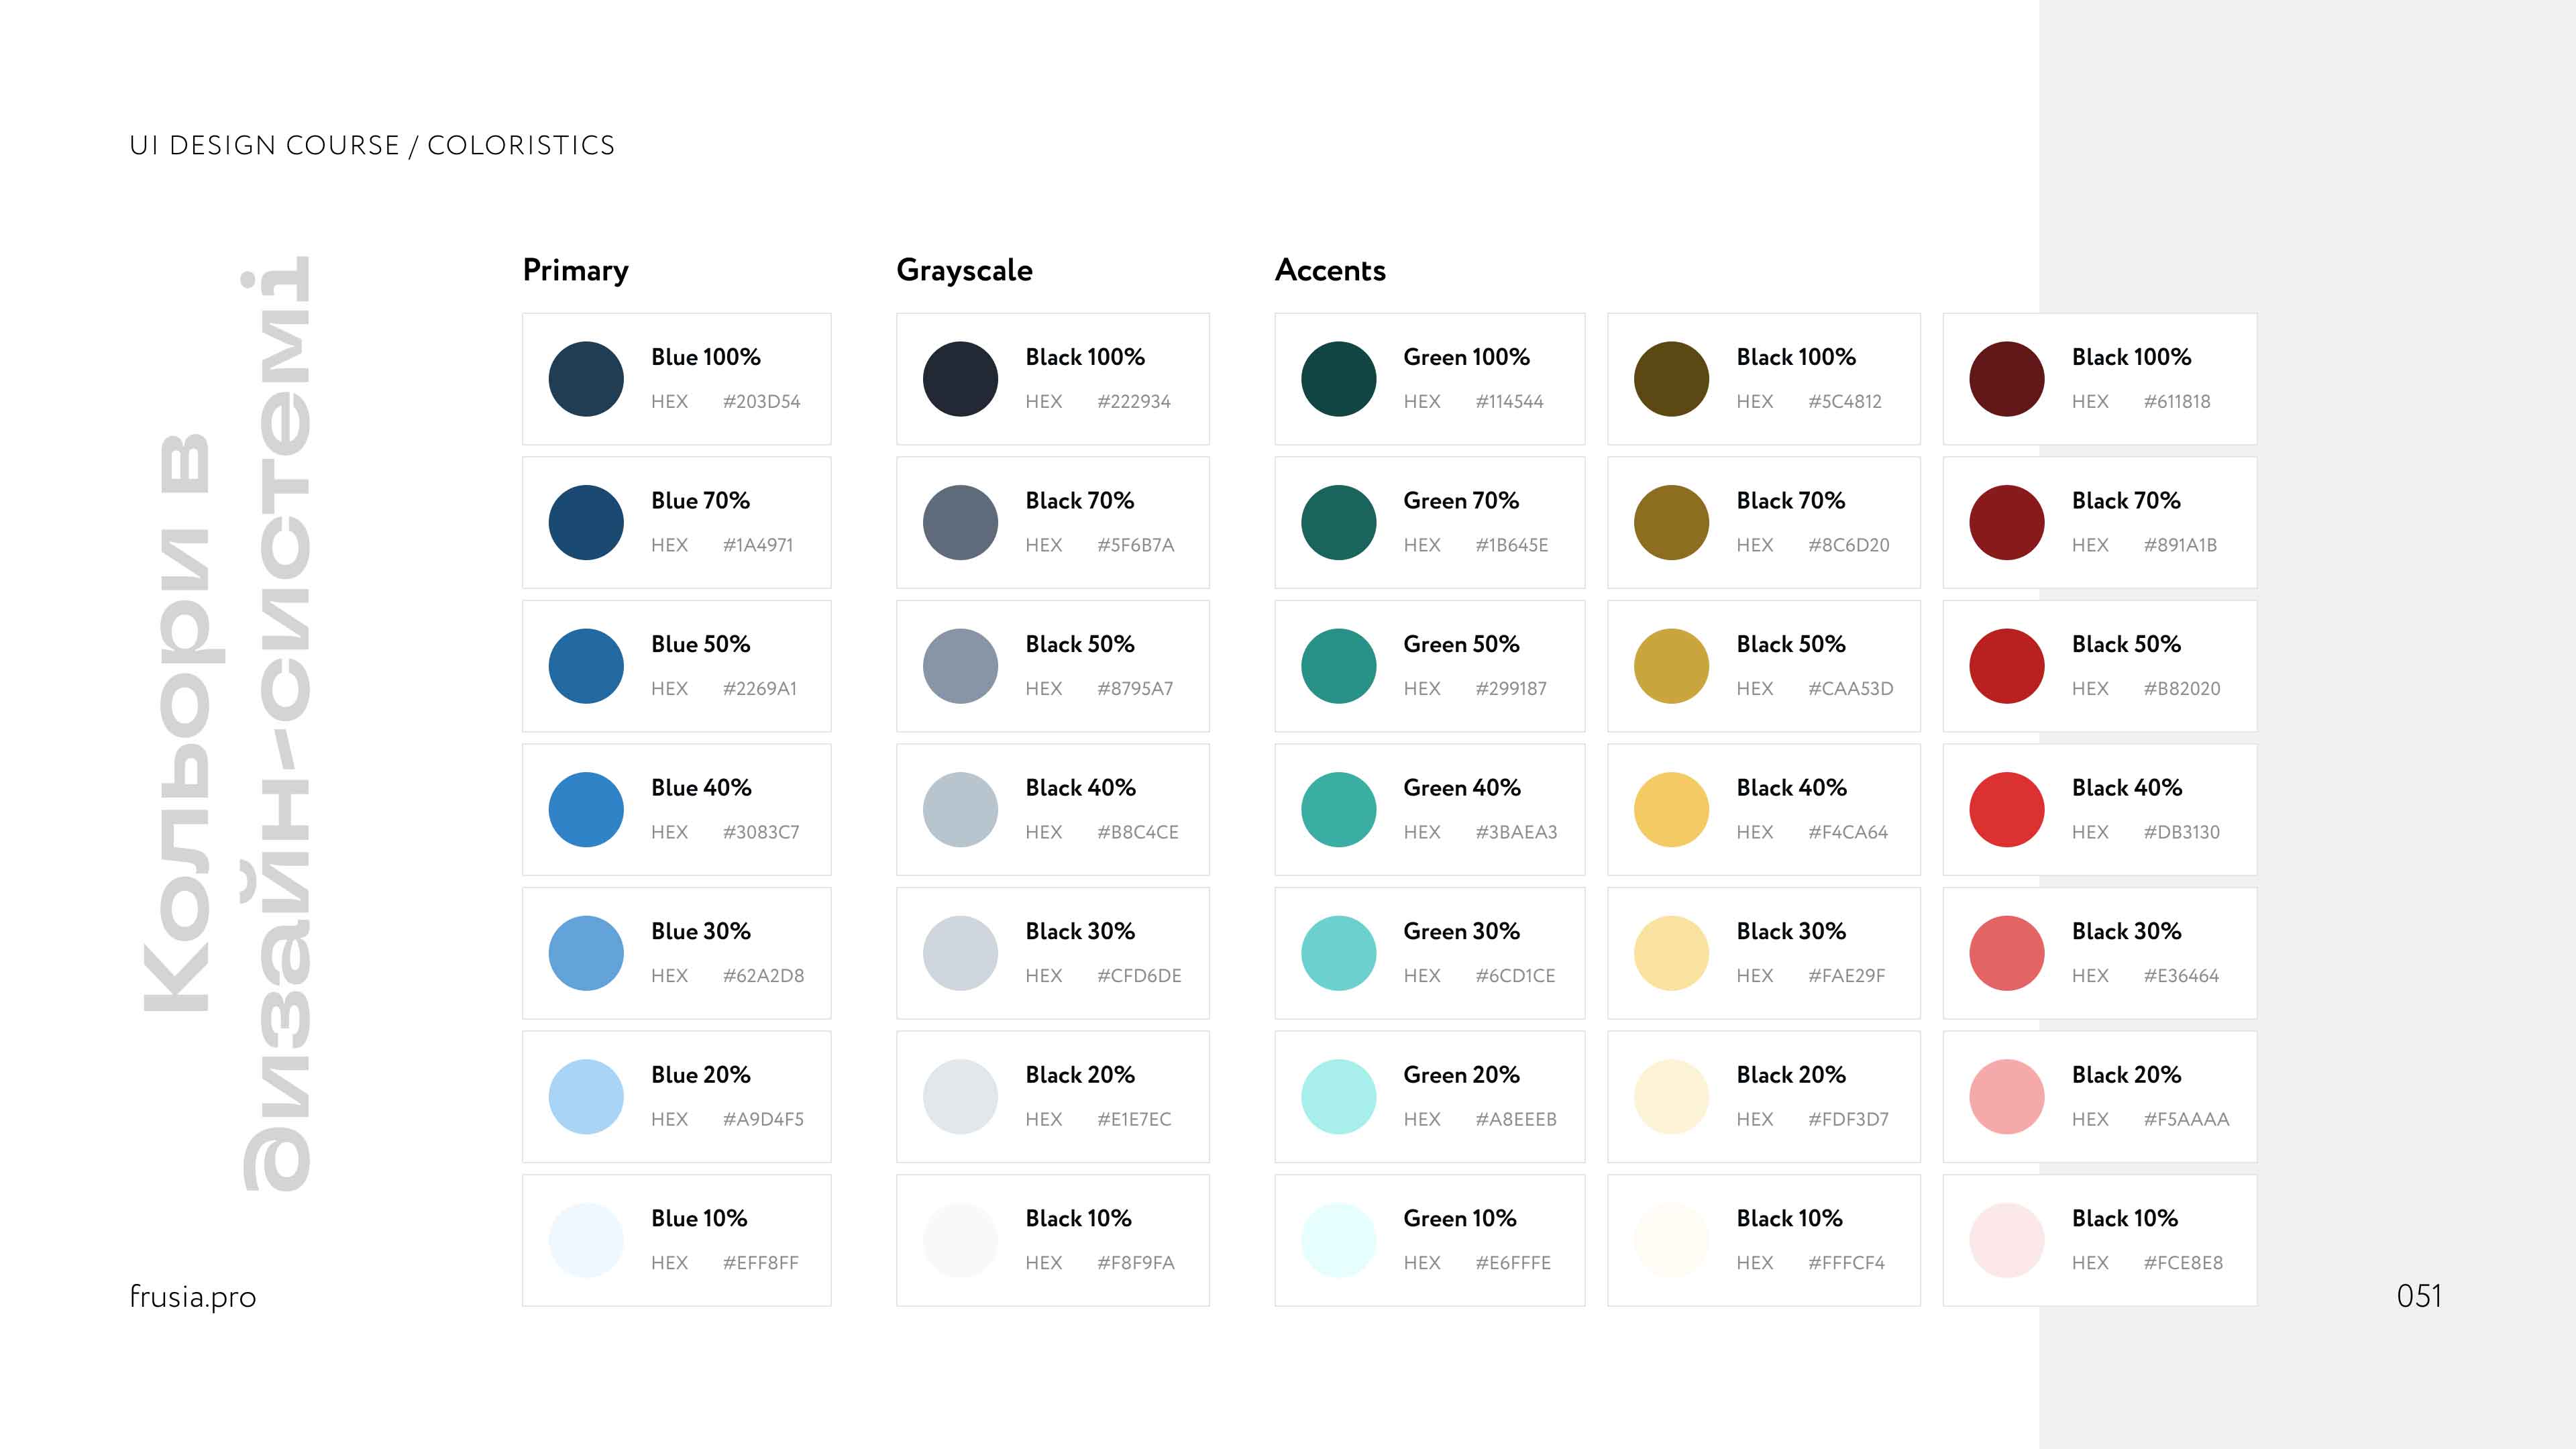 Гайд по кольору для UI дизайнерів